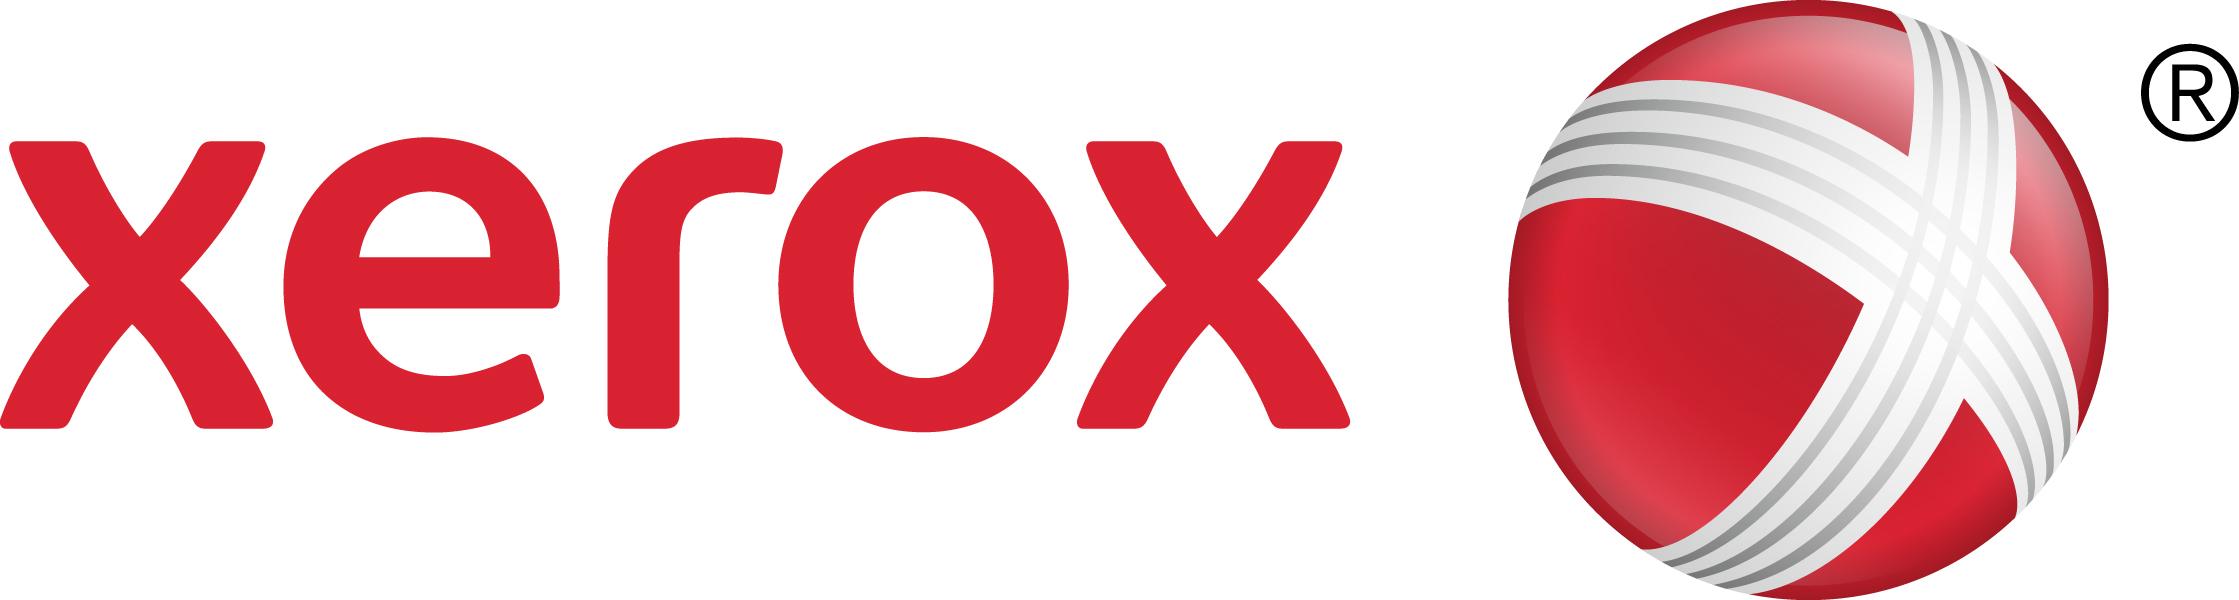 Xerox, desemnat lider pentru serviciile de management al fluxurilor de lucru cu documentele în raportul IDC MarketScape